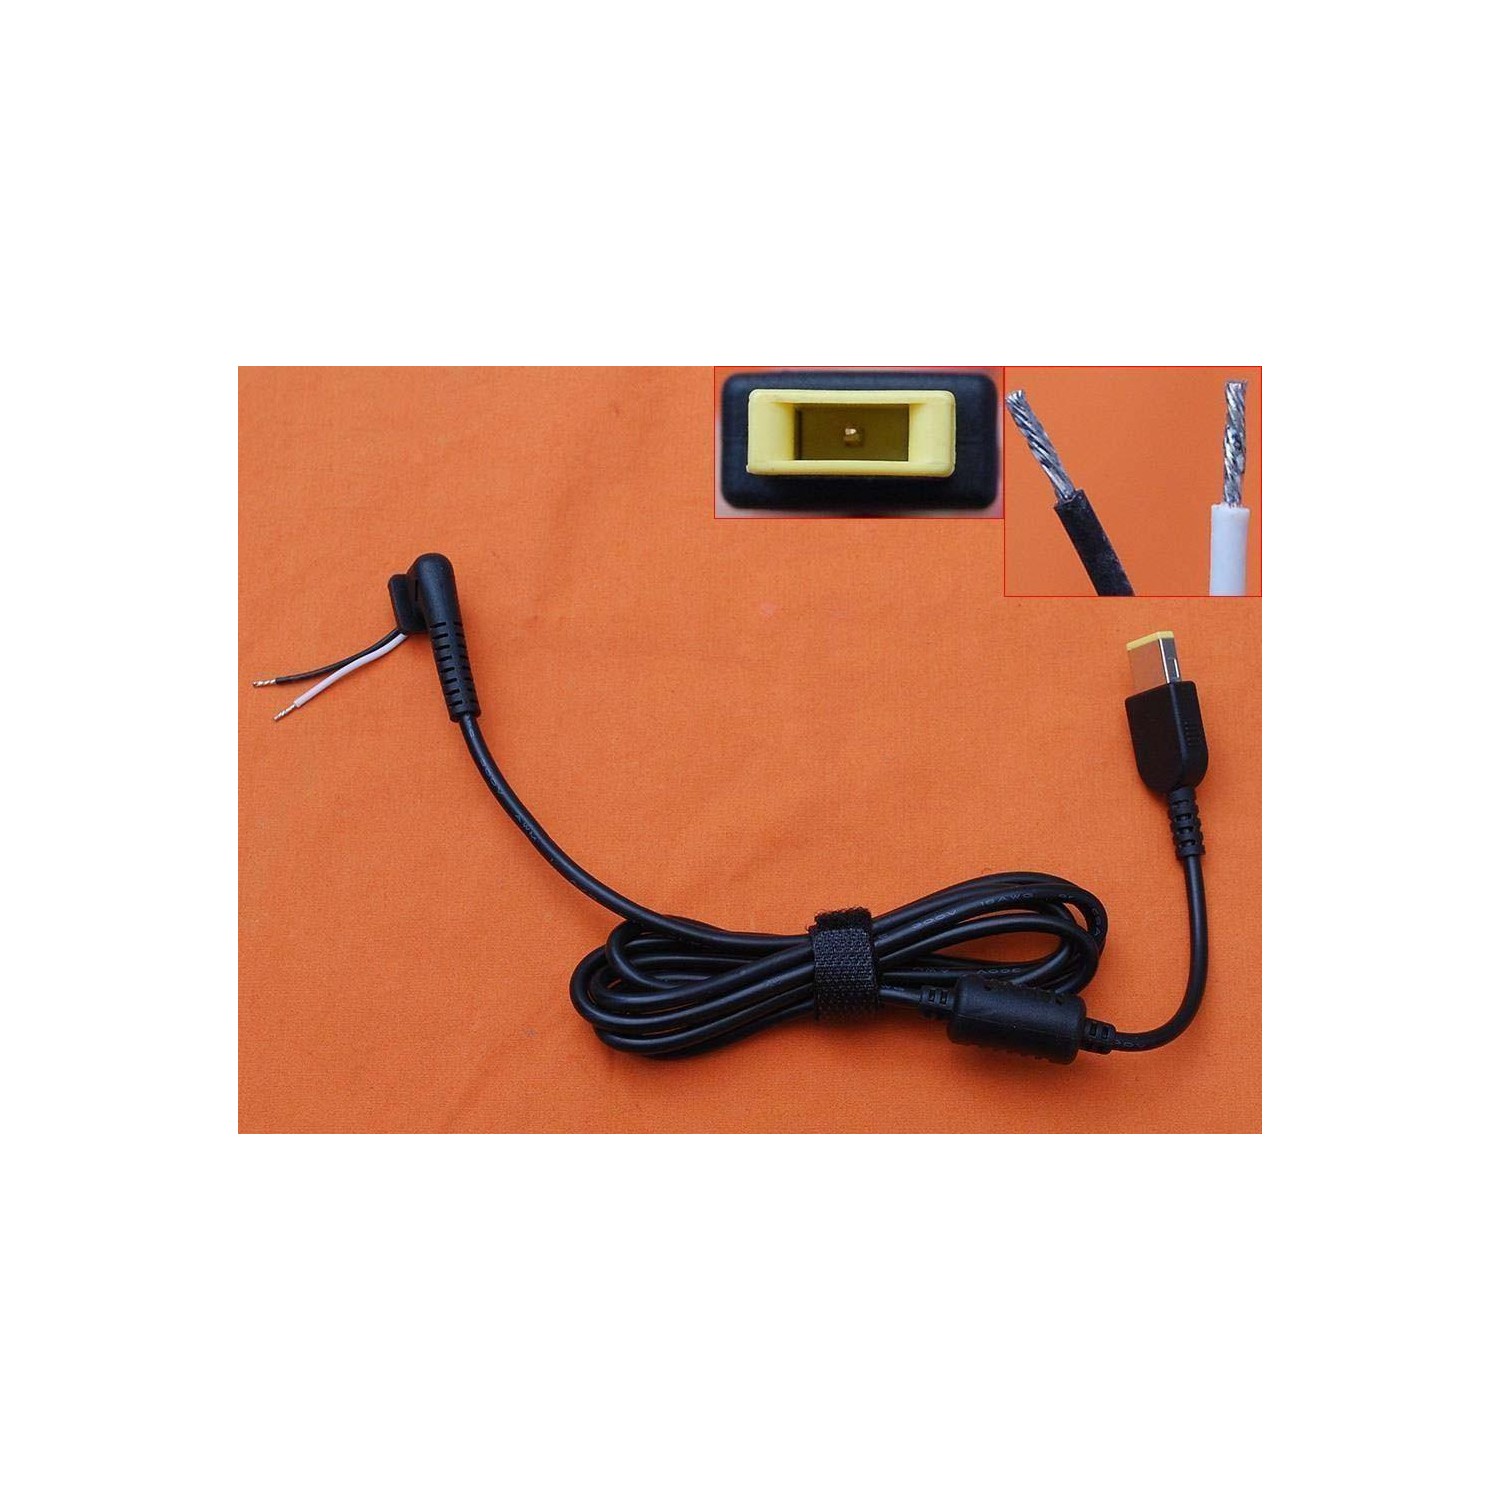 Cable para USB DC Cords para LENOVO Yoga, GOOD QUALITY K220